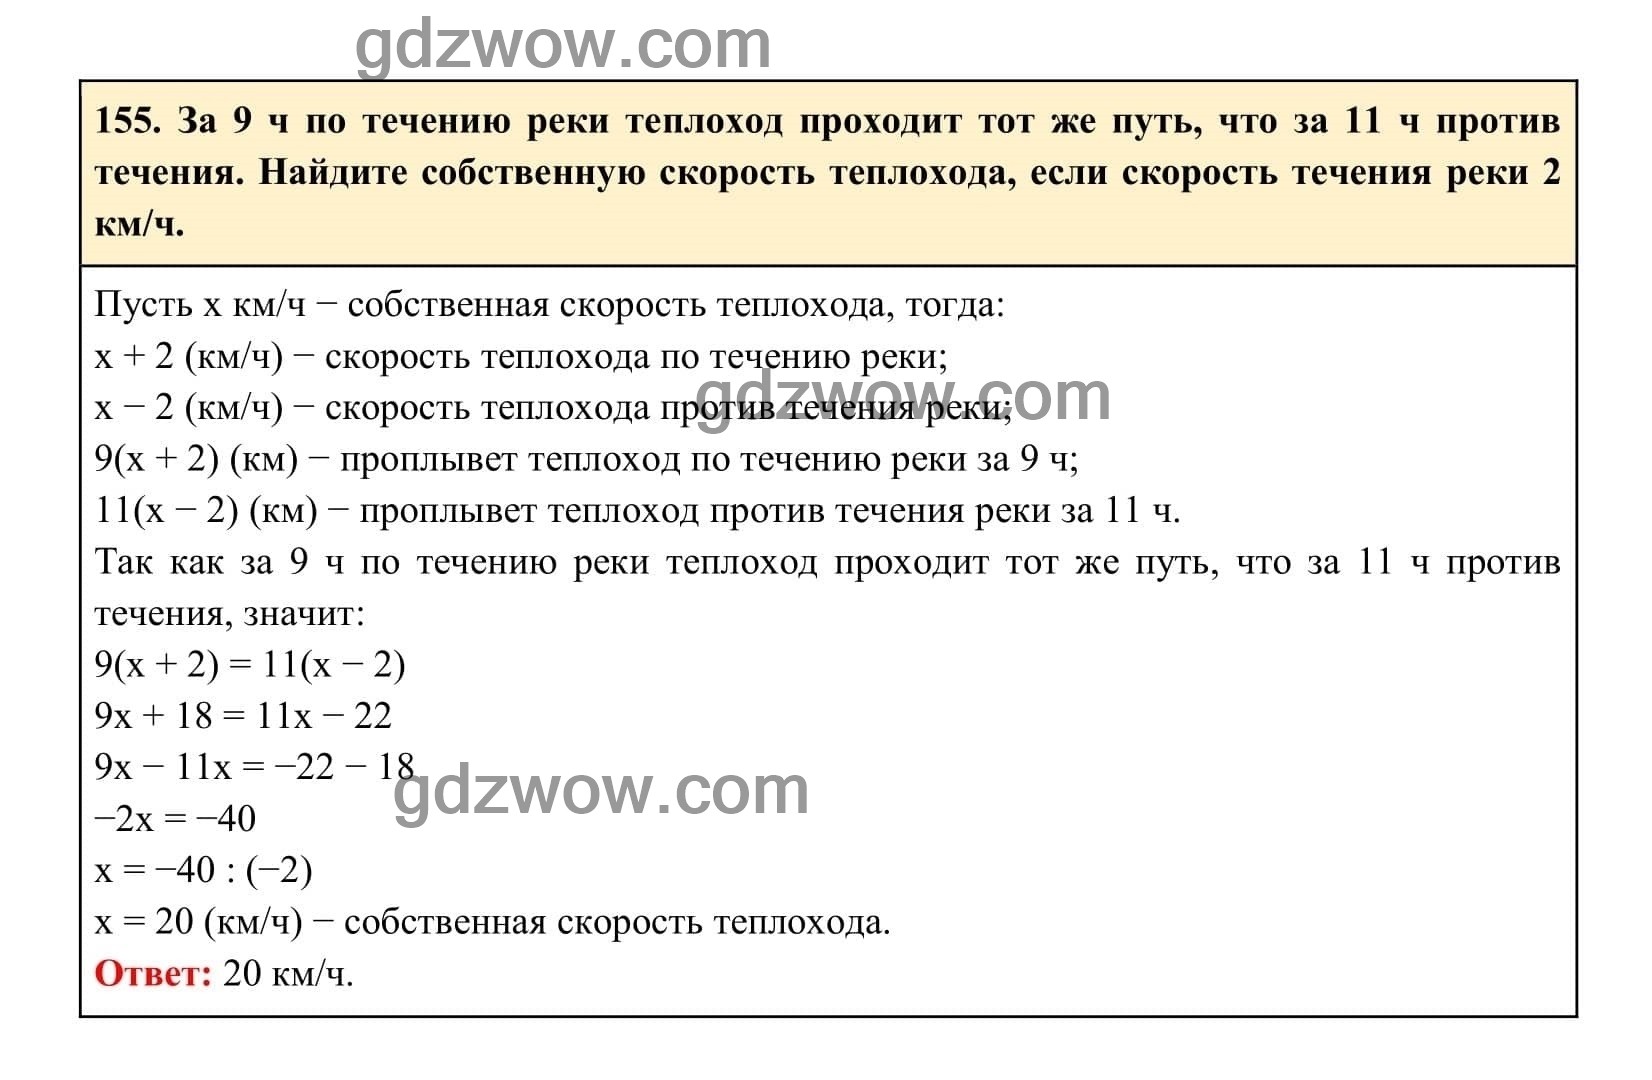 Упражнение 155 - ГДЗ по Алгебре 7 класс Учебник Макарычев (решебник) - GDZwow